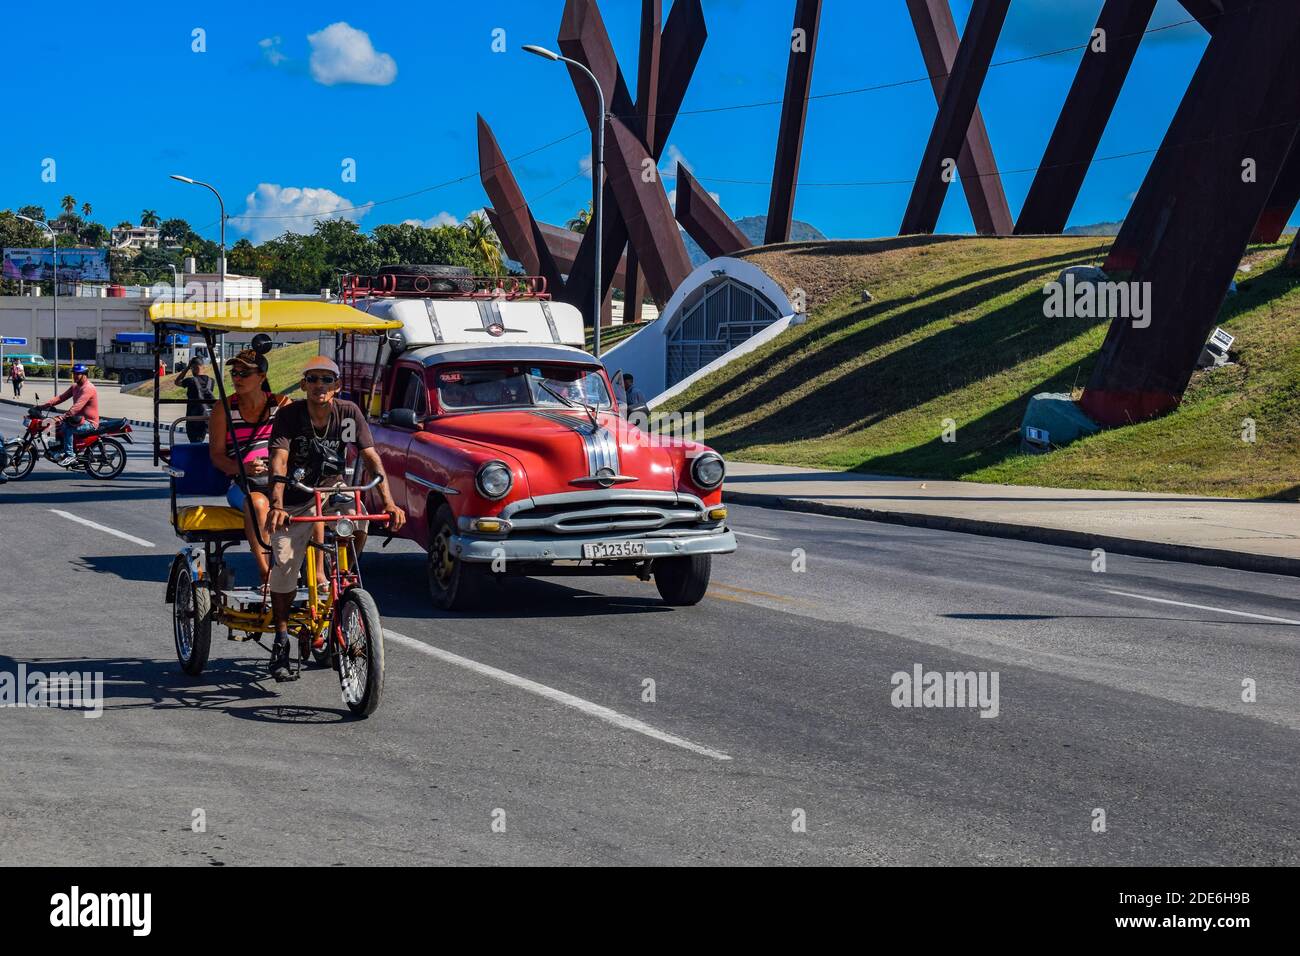 Bici-taxi and car driving past plaza de la revolucion - Santiago de Cuba - Cuba Stock Photo